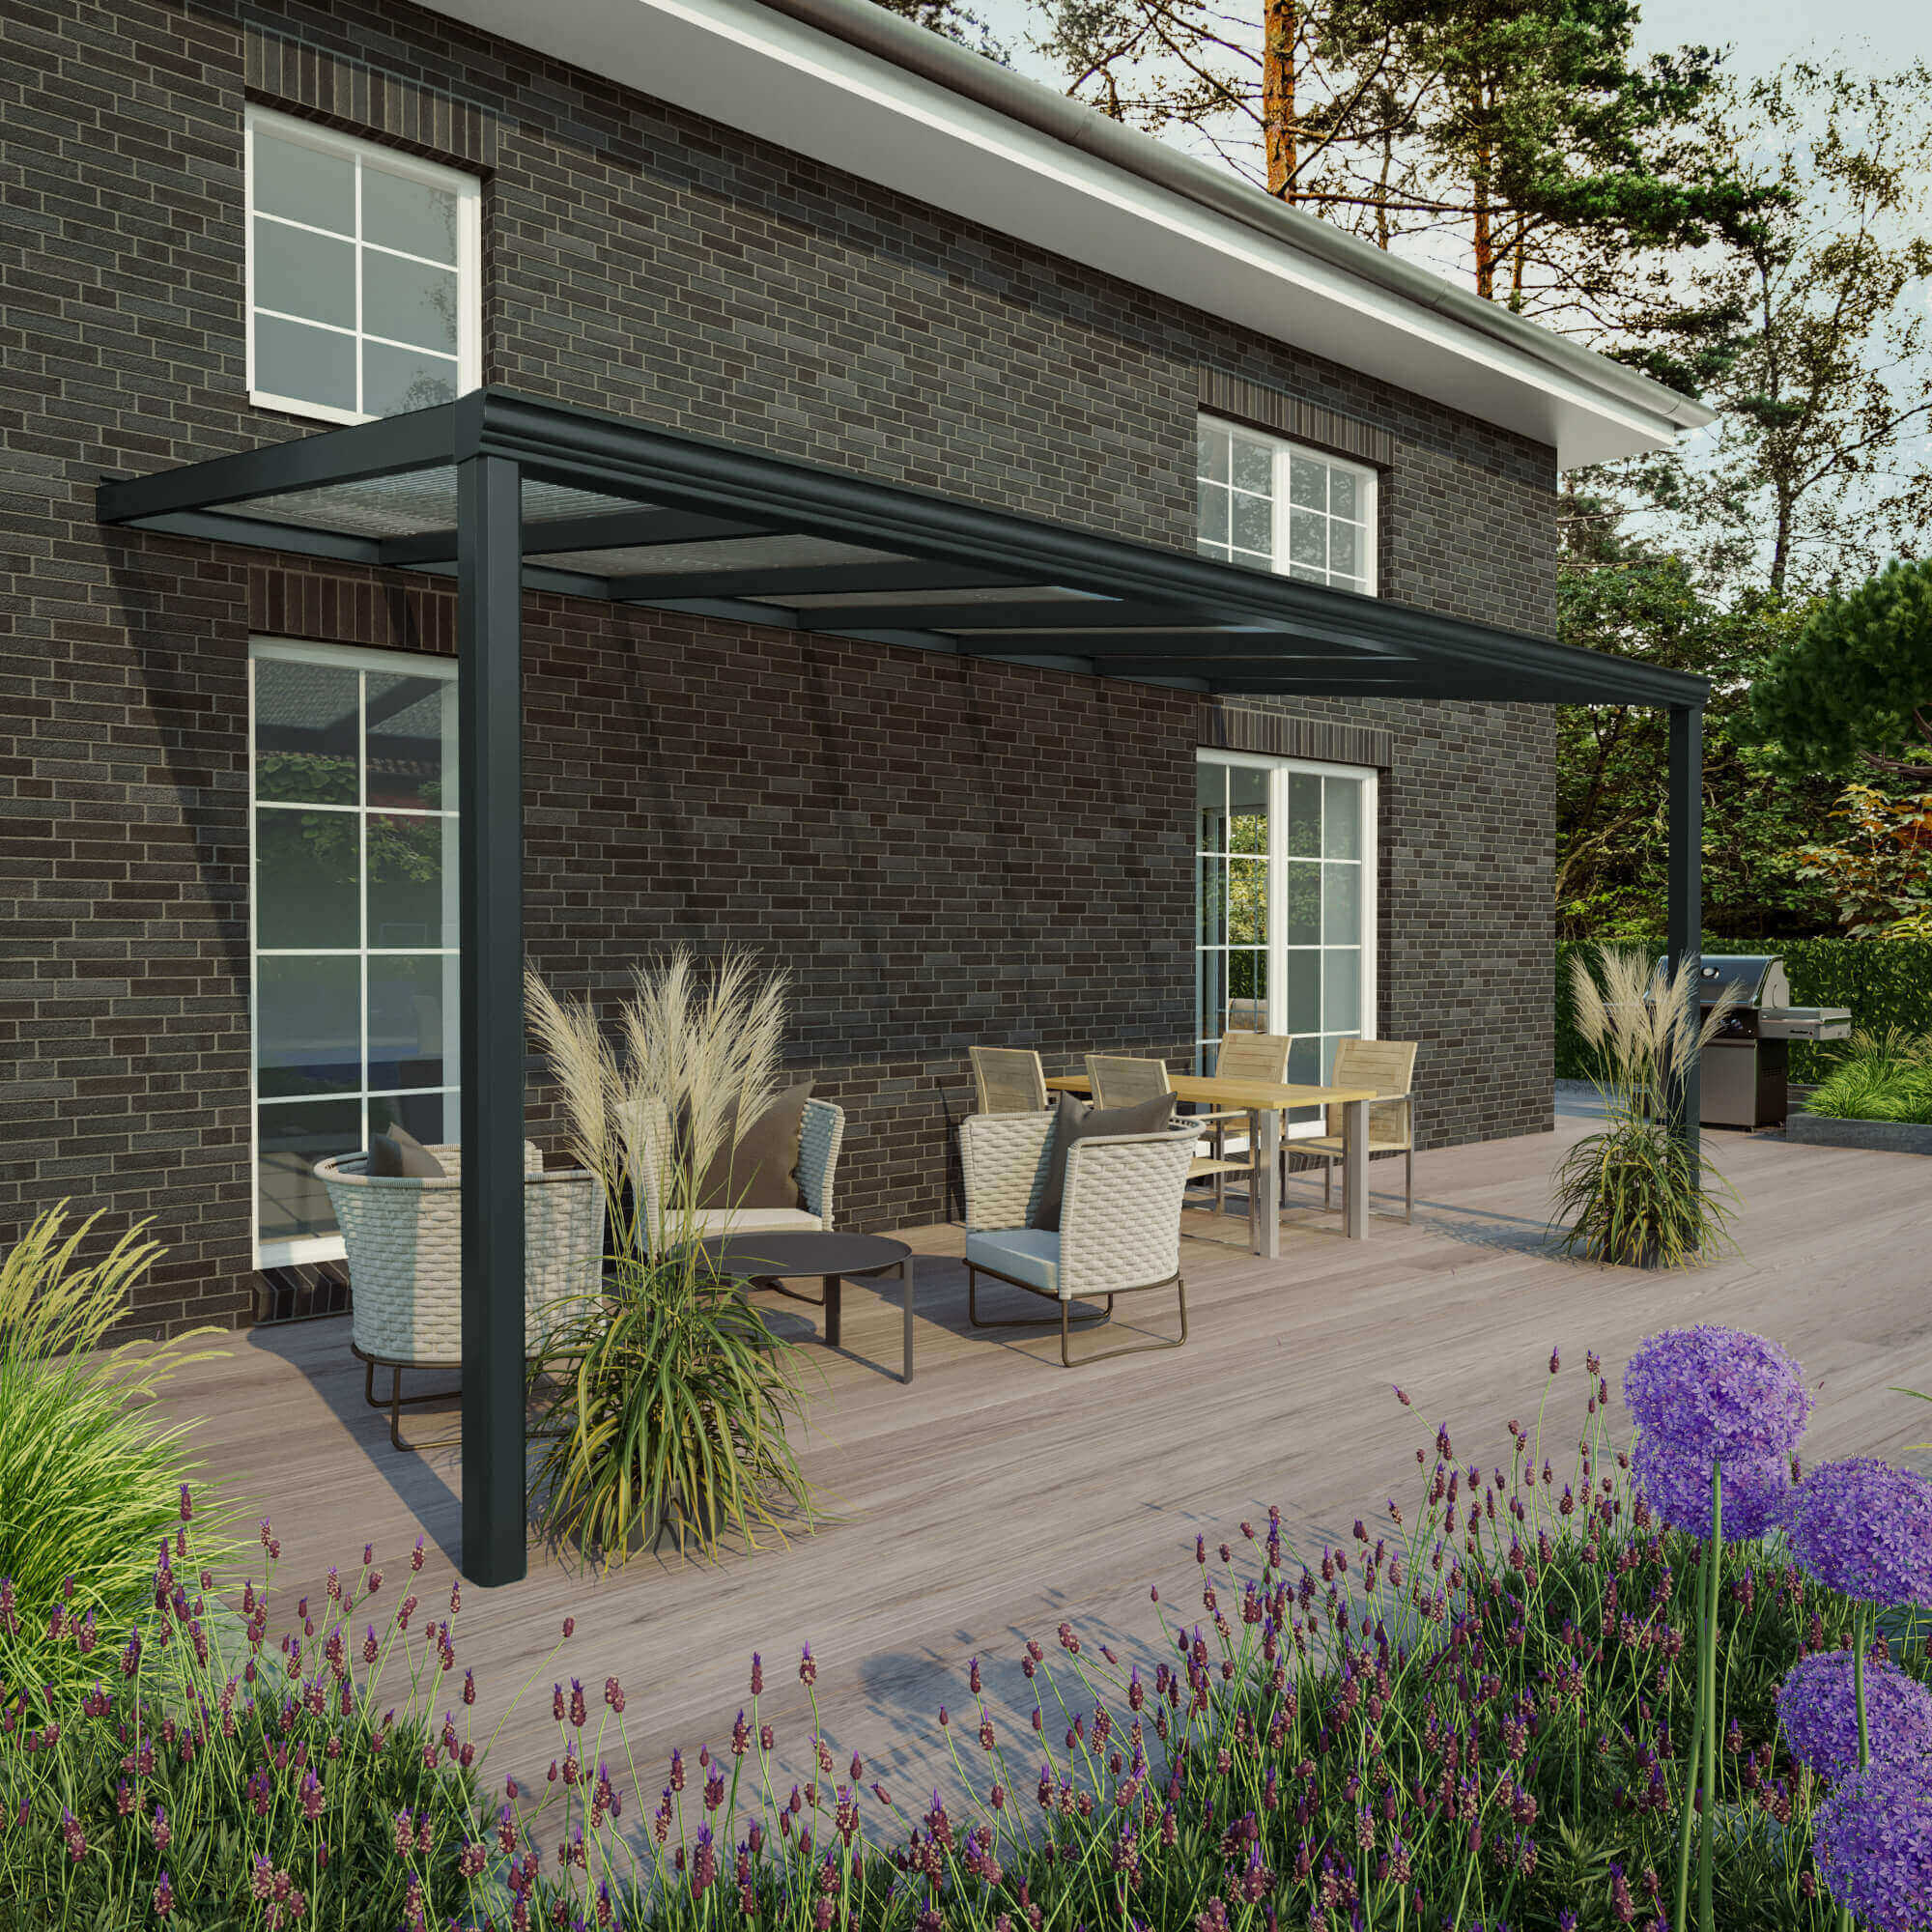 Stijlvolle terrasoverkapping op bakstenen huis met tuinmeubelen en planten, perfect voor buitenruimtes